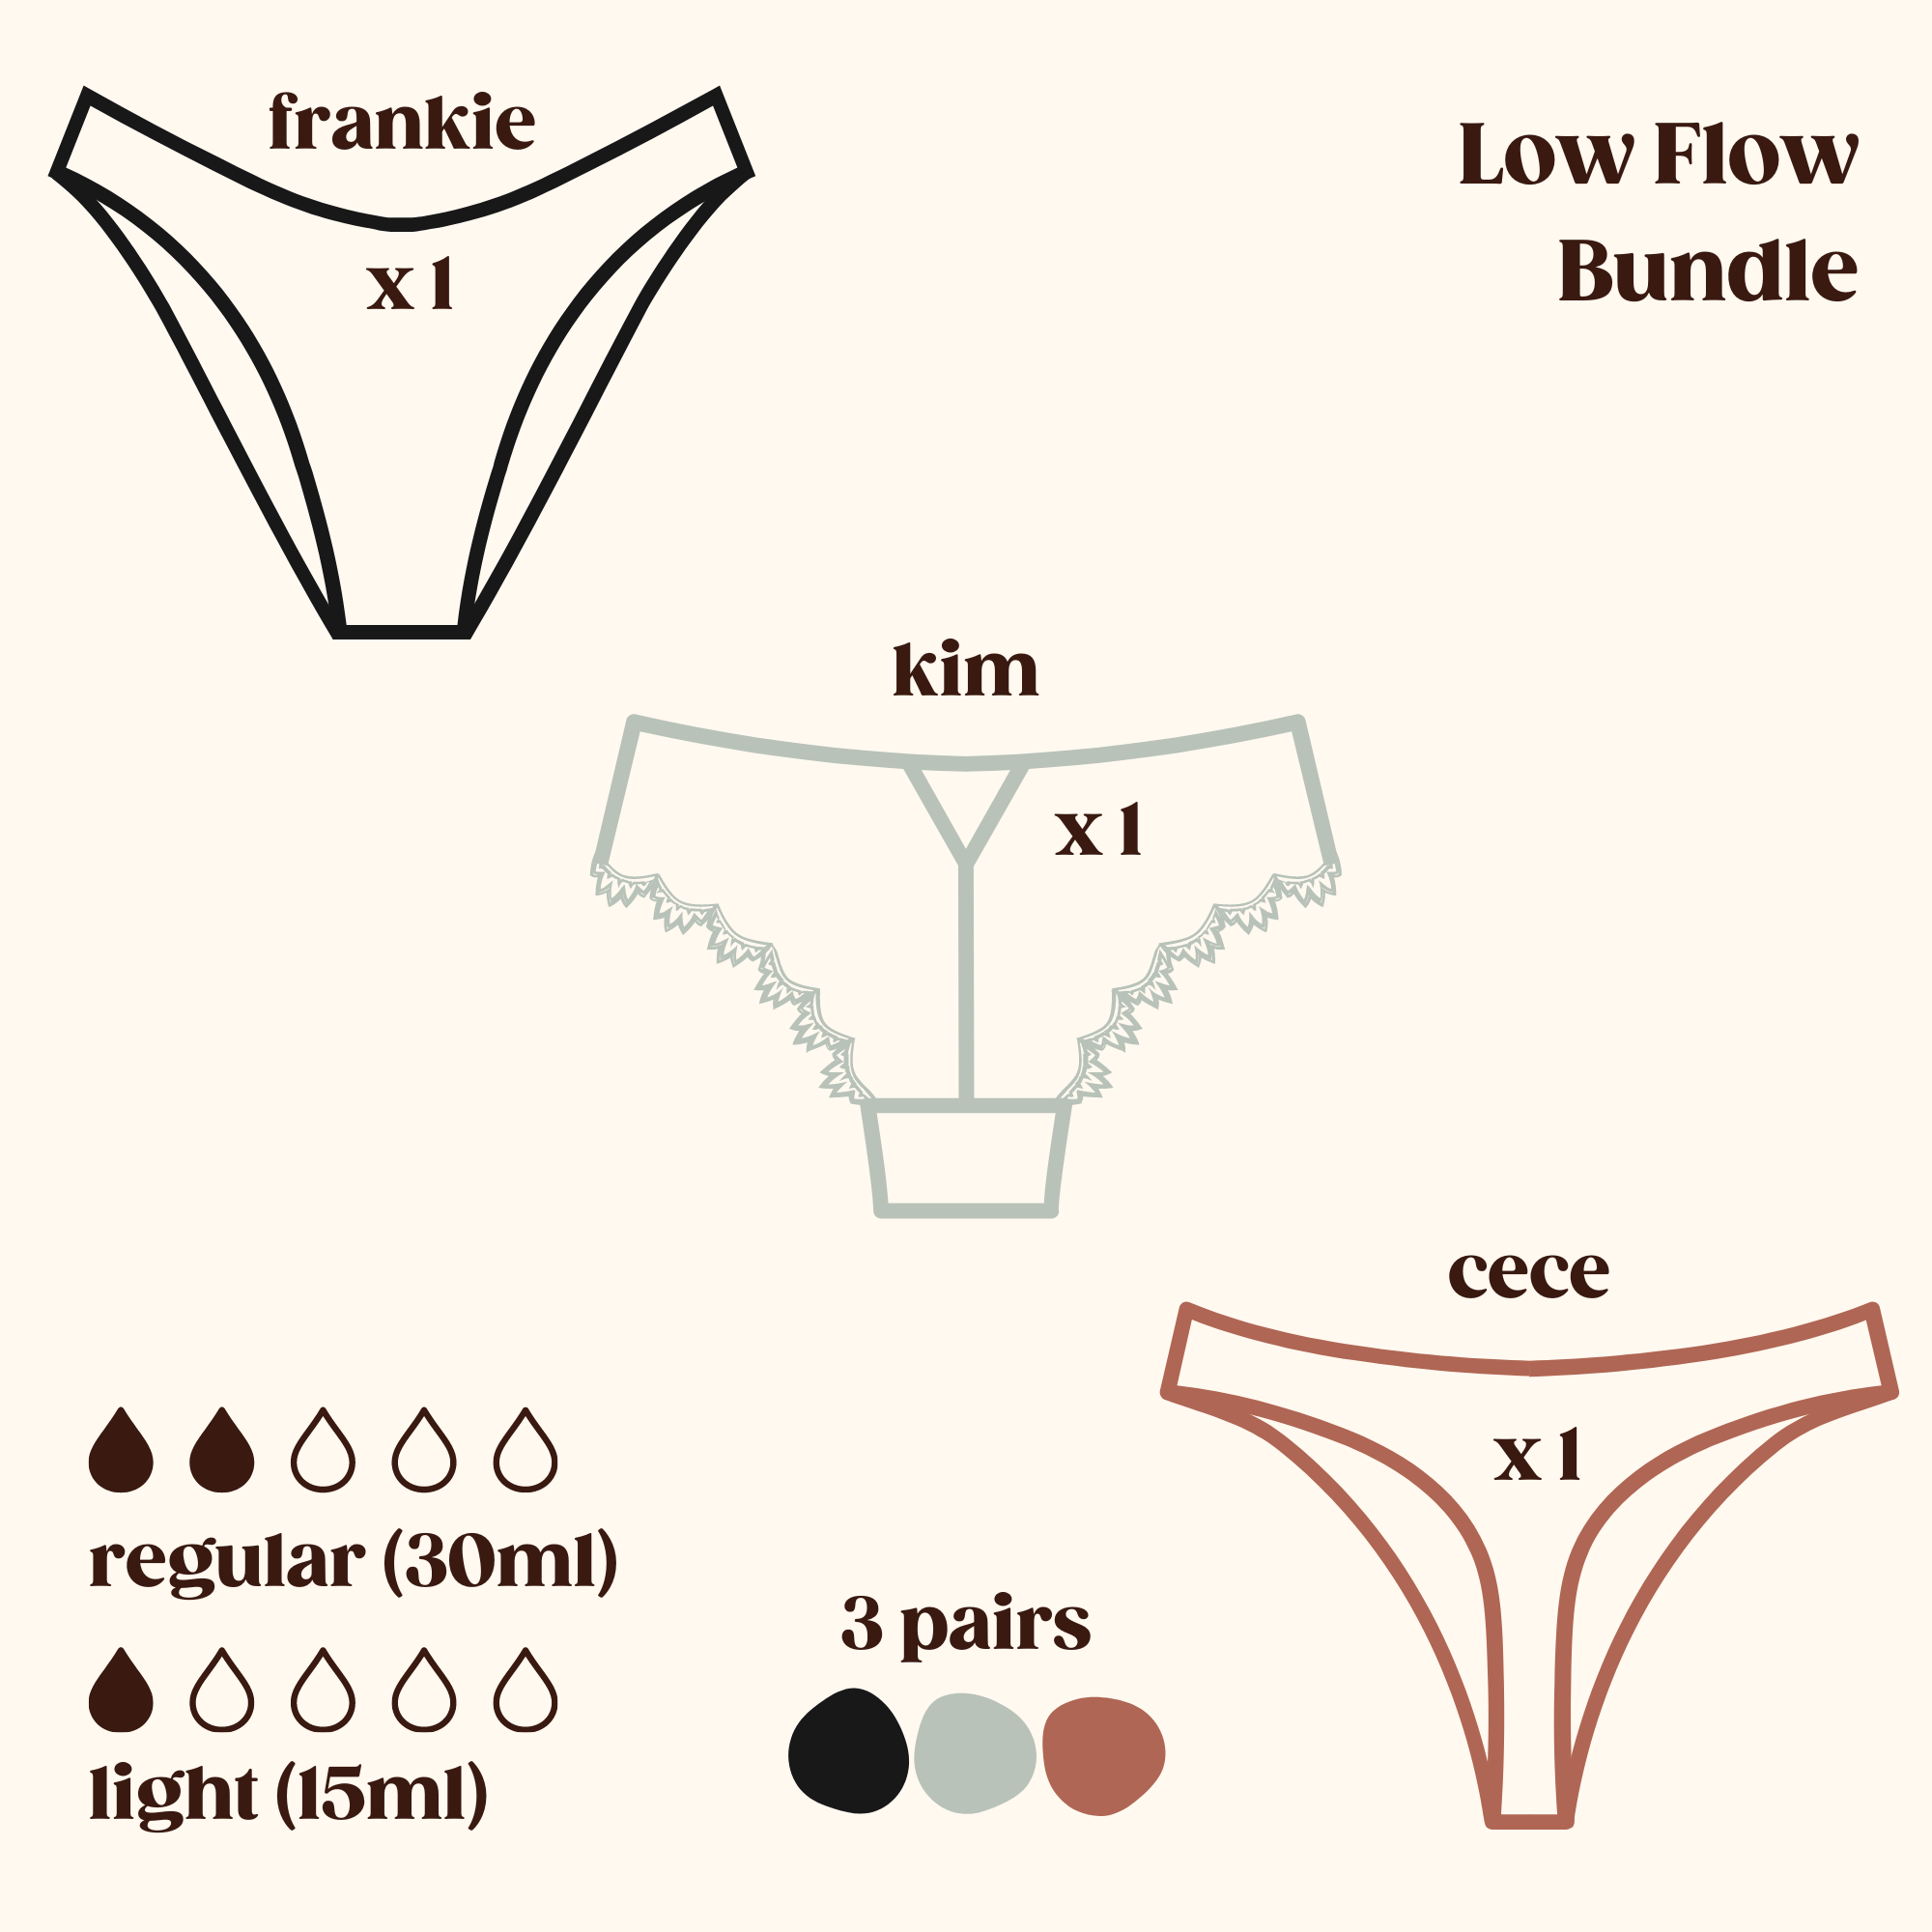 Low Flow Bundle (Frankie, Kim, Cece)